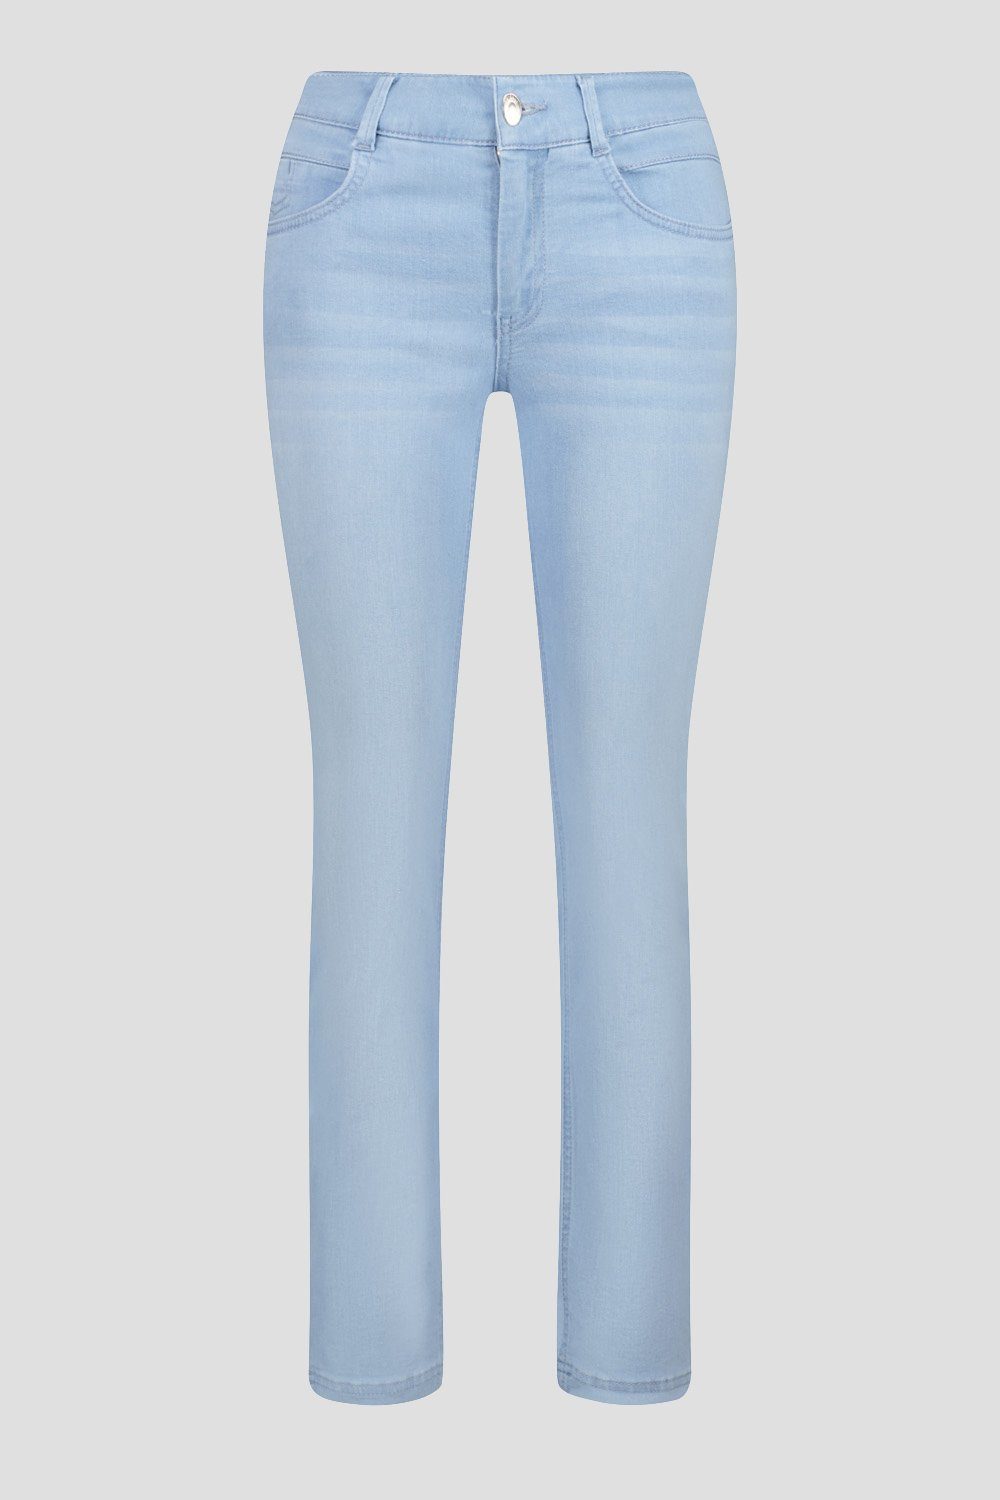 Atelier GARDEUR Slim-fit-Jeans Atelier GARDEUR VICKY743-670801 blau Bleach Used